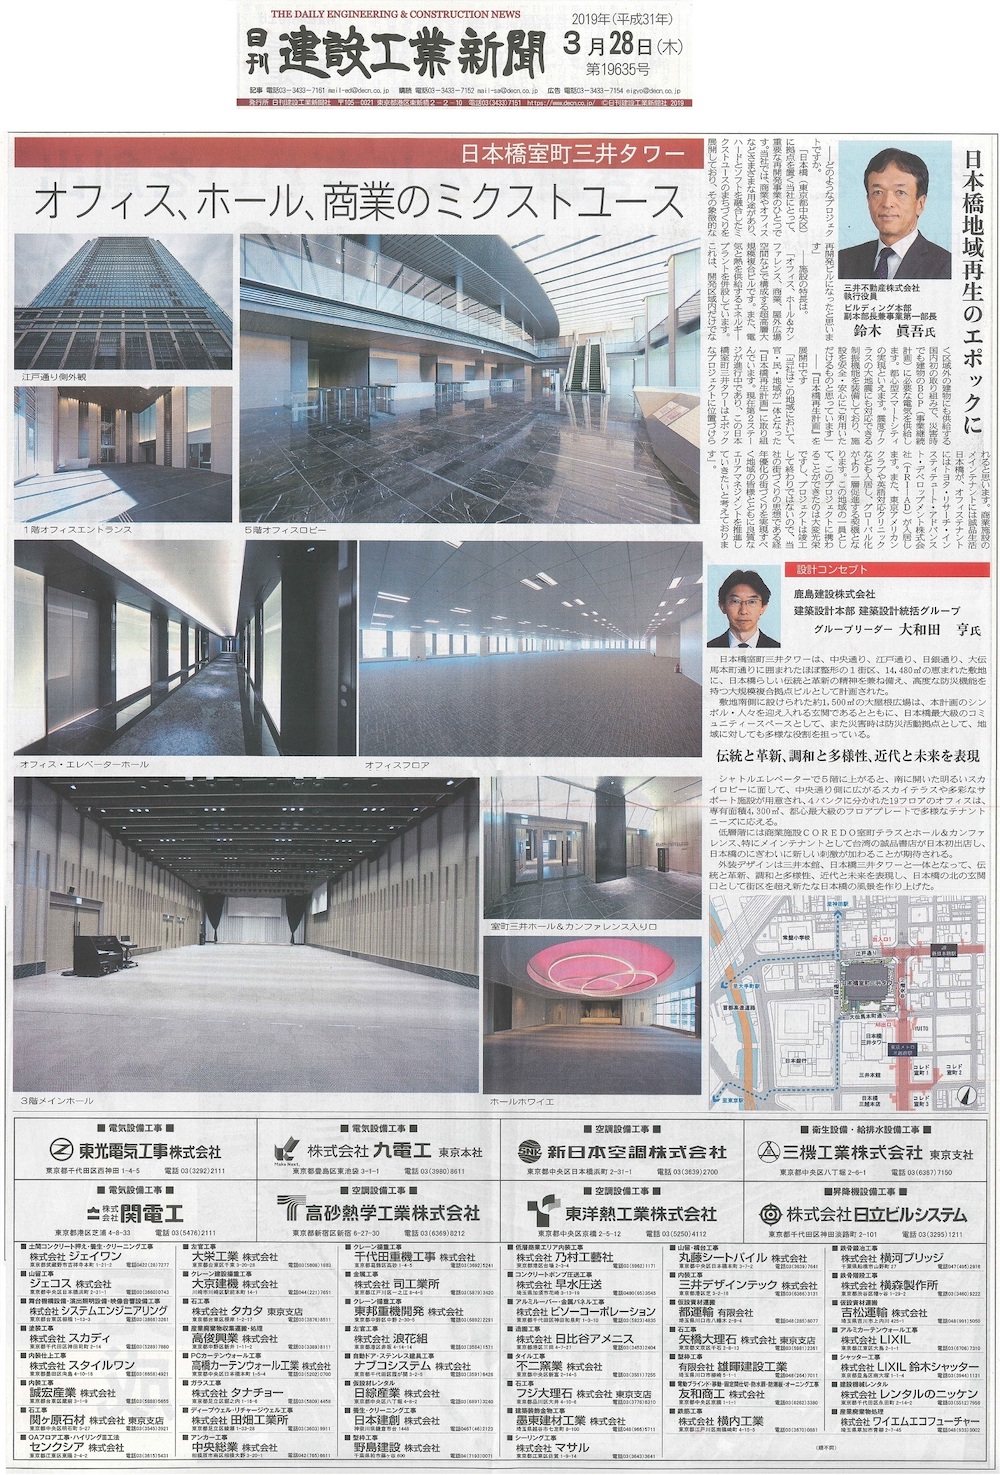 日本橋室町三井タワーの竣工広告が『日刊建設工業新聞』に掲載